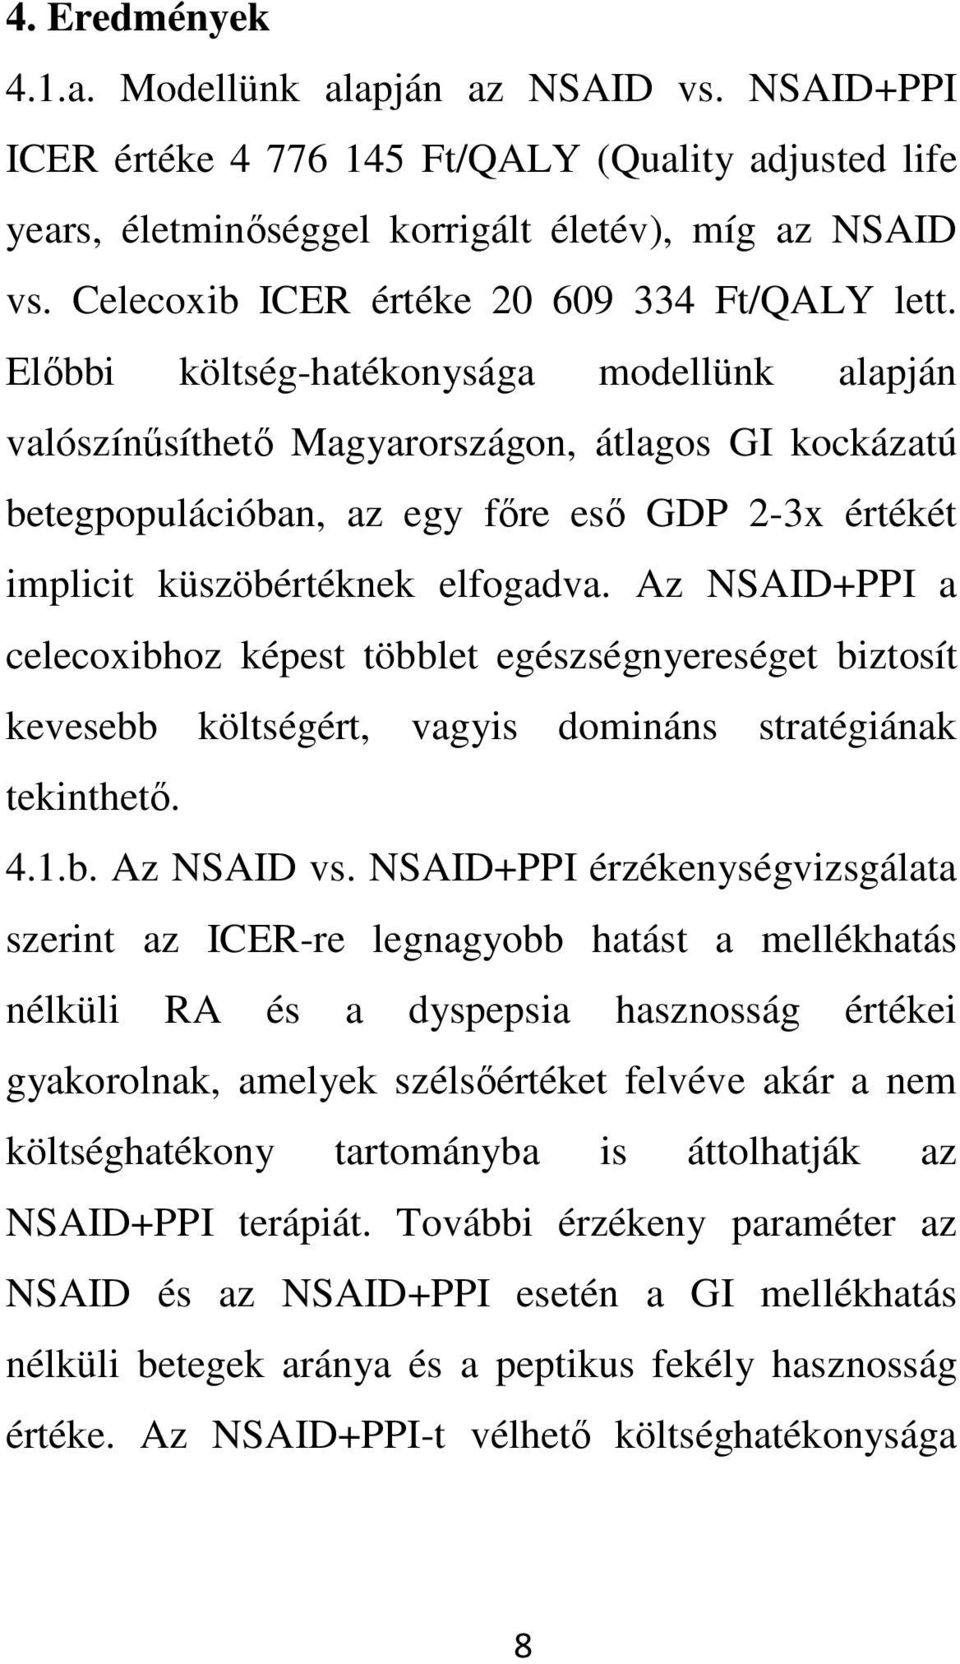 Elıbbi költség-hatékonysága modellünk alapján valószínősíthetı Magyarországon, átlagos GI kockázatú betegpopulációban, az egy fıre esı GDP 2-3x értékét implicit küszöbértéknek elfogadva.